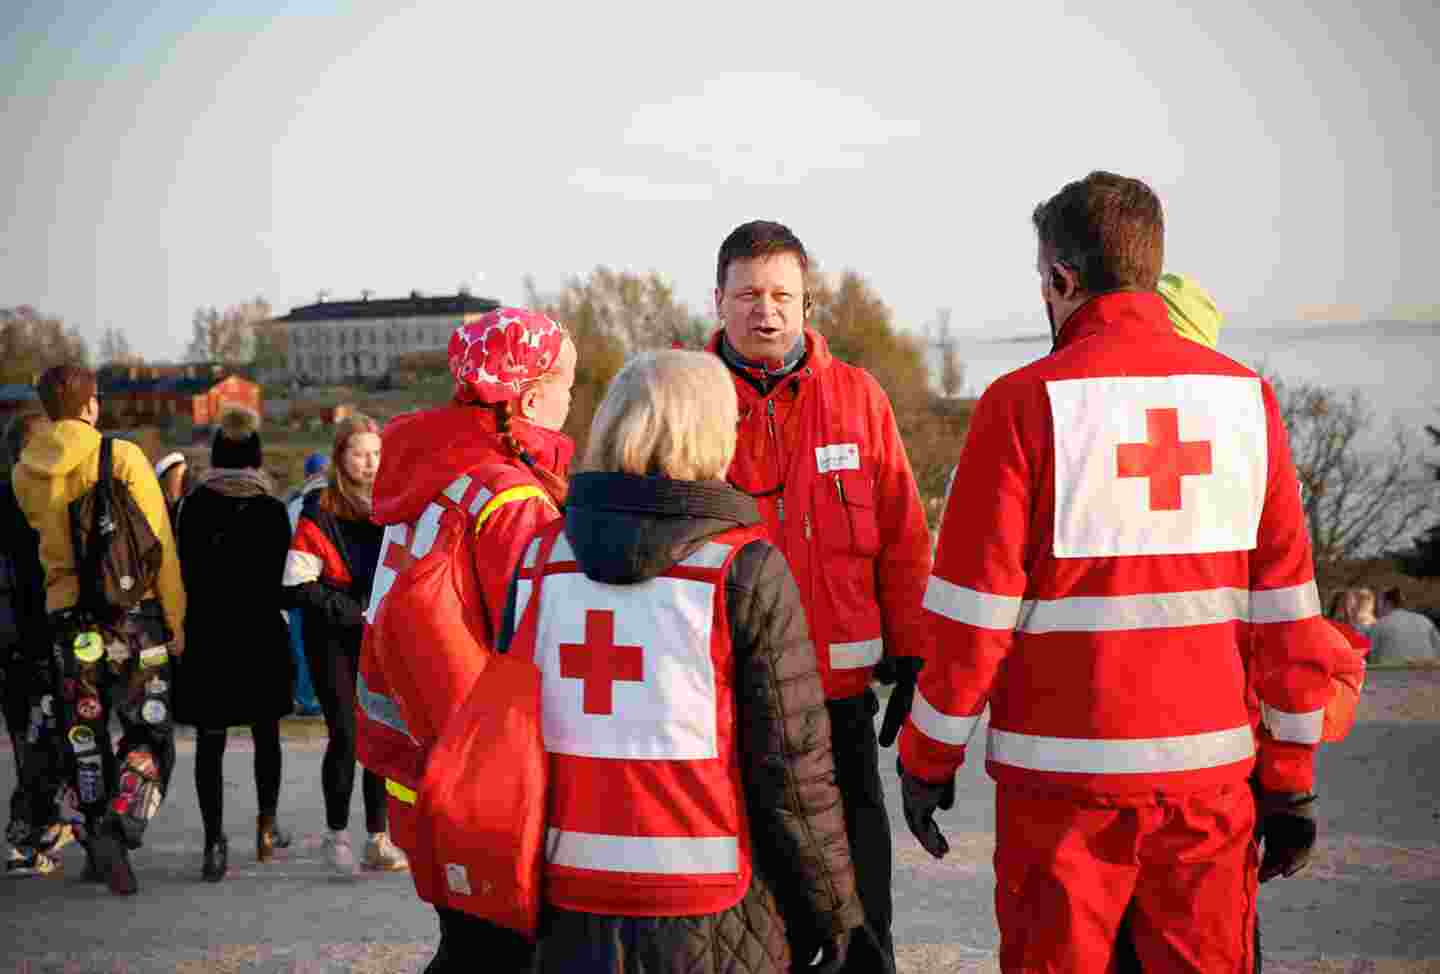 Neljä ensiapupäivystäjää Punaisen Ristin varusteissa keskustelee ulkoilmassa väkijoukon keskellä.